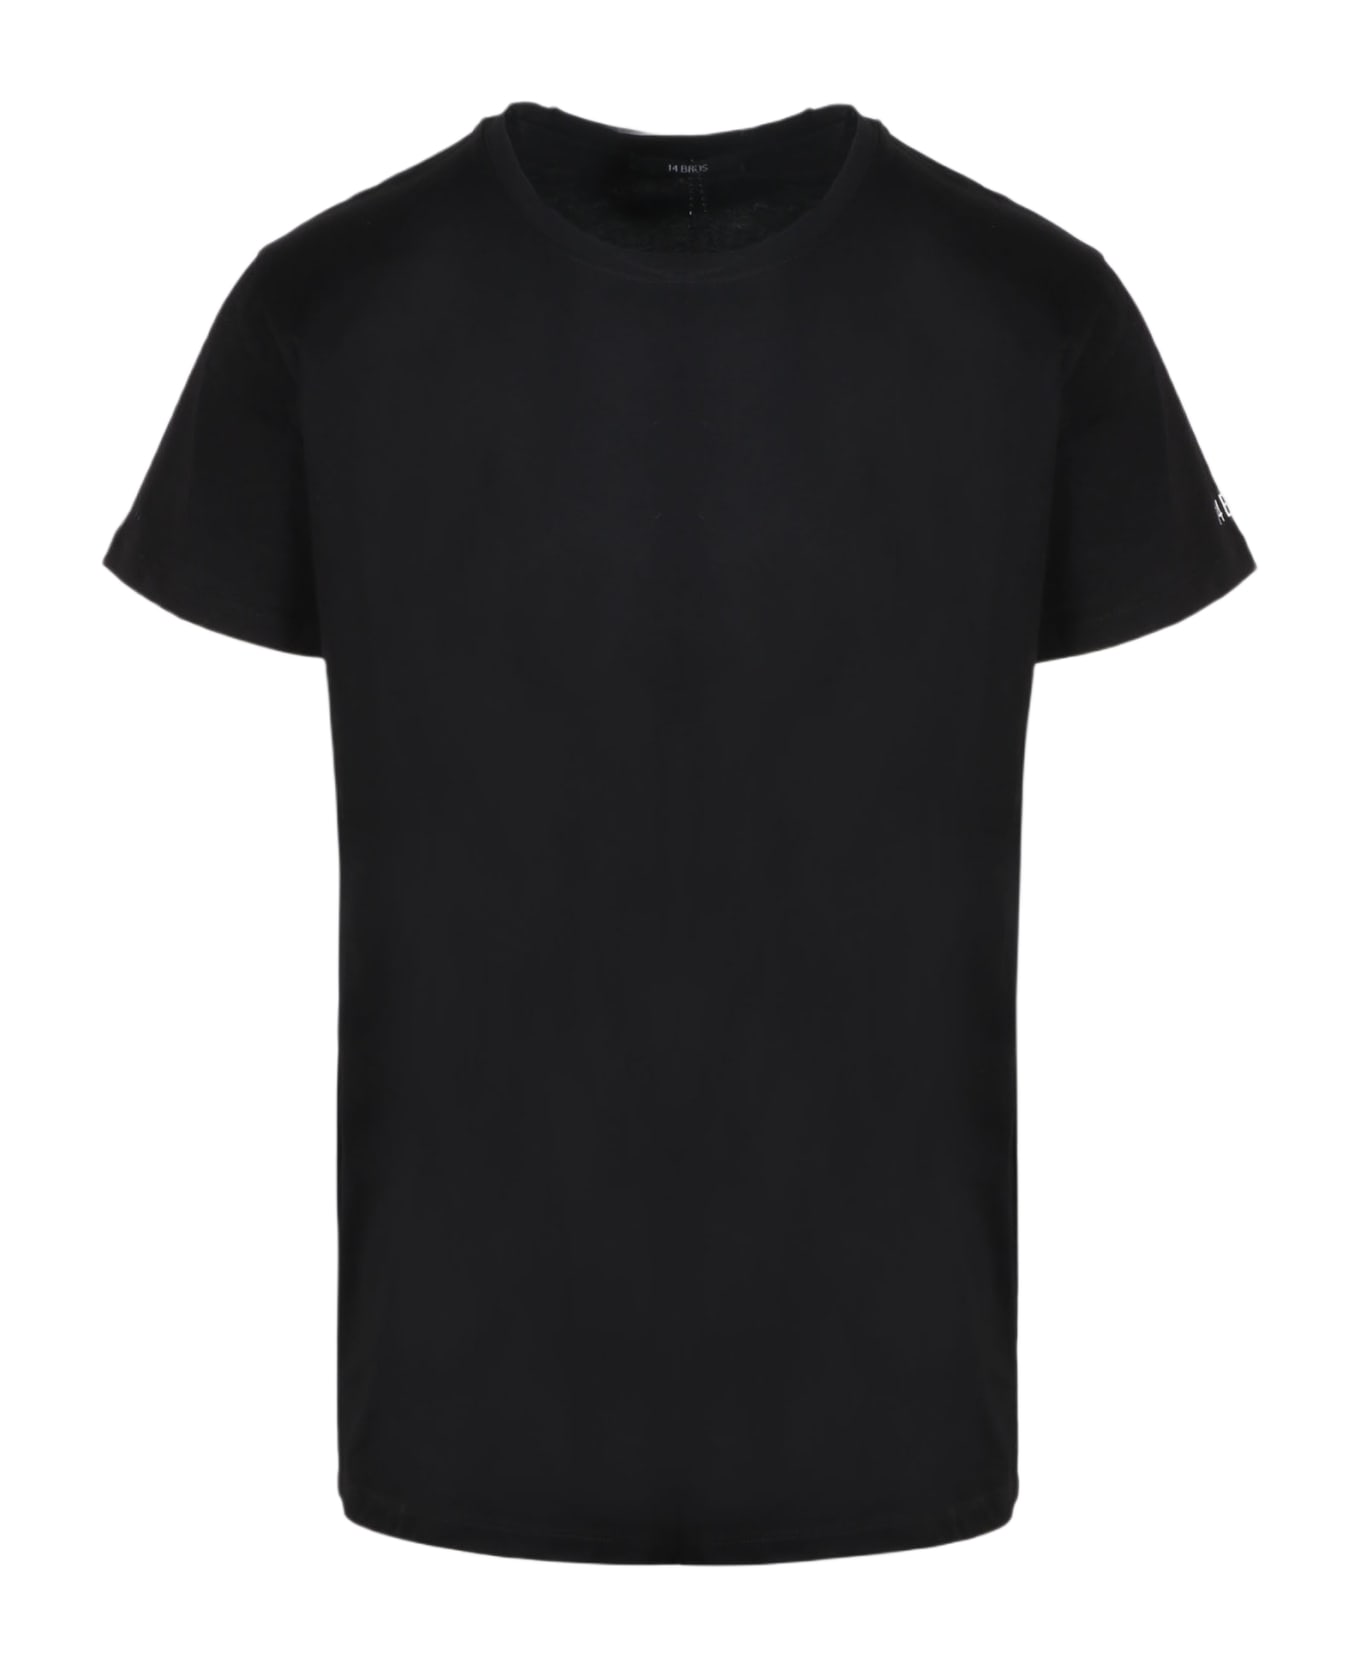 14 Bros Basic T-shirt - Black